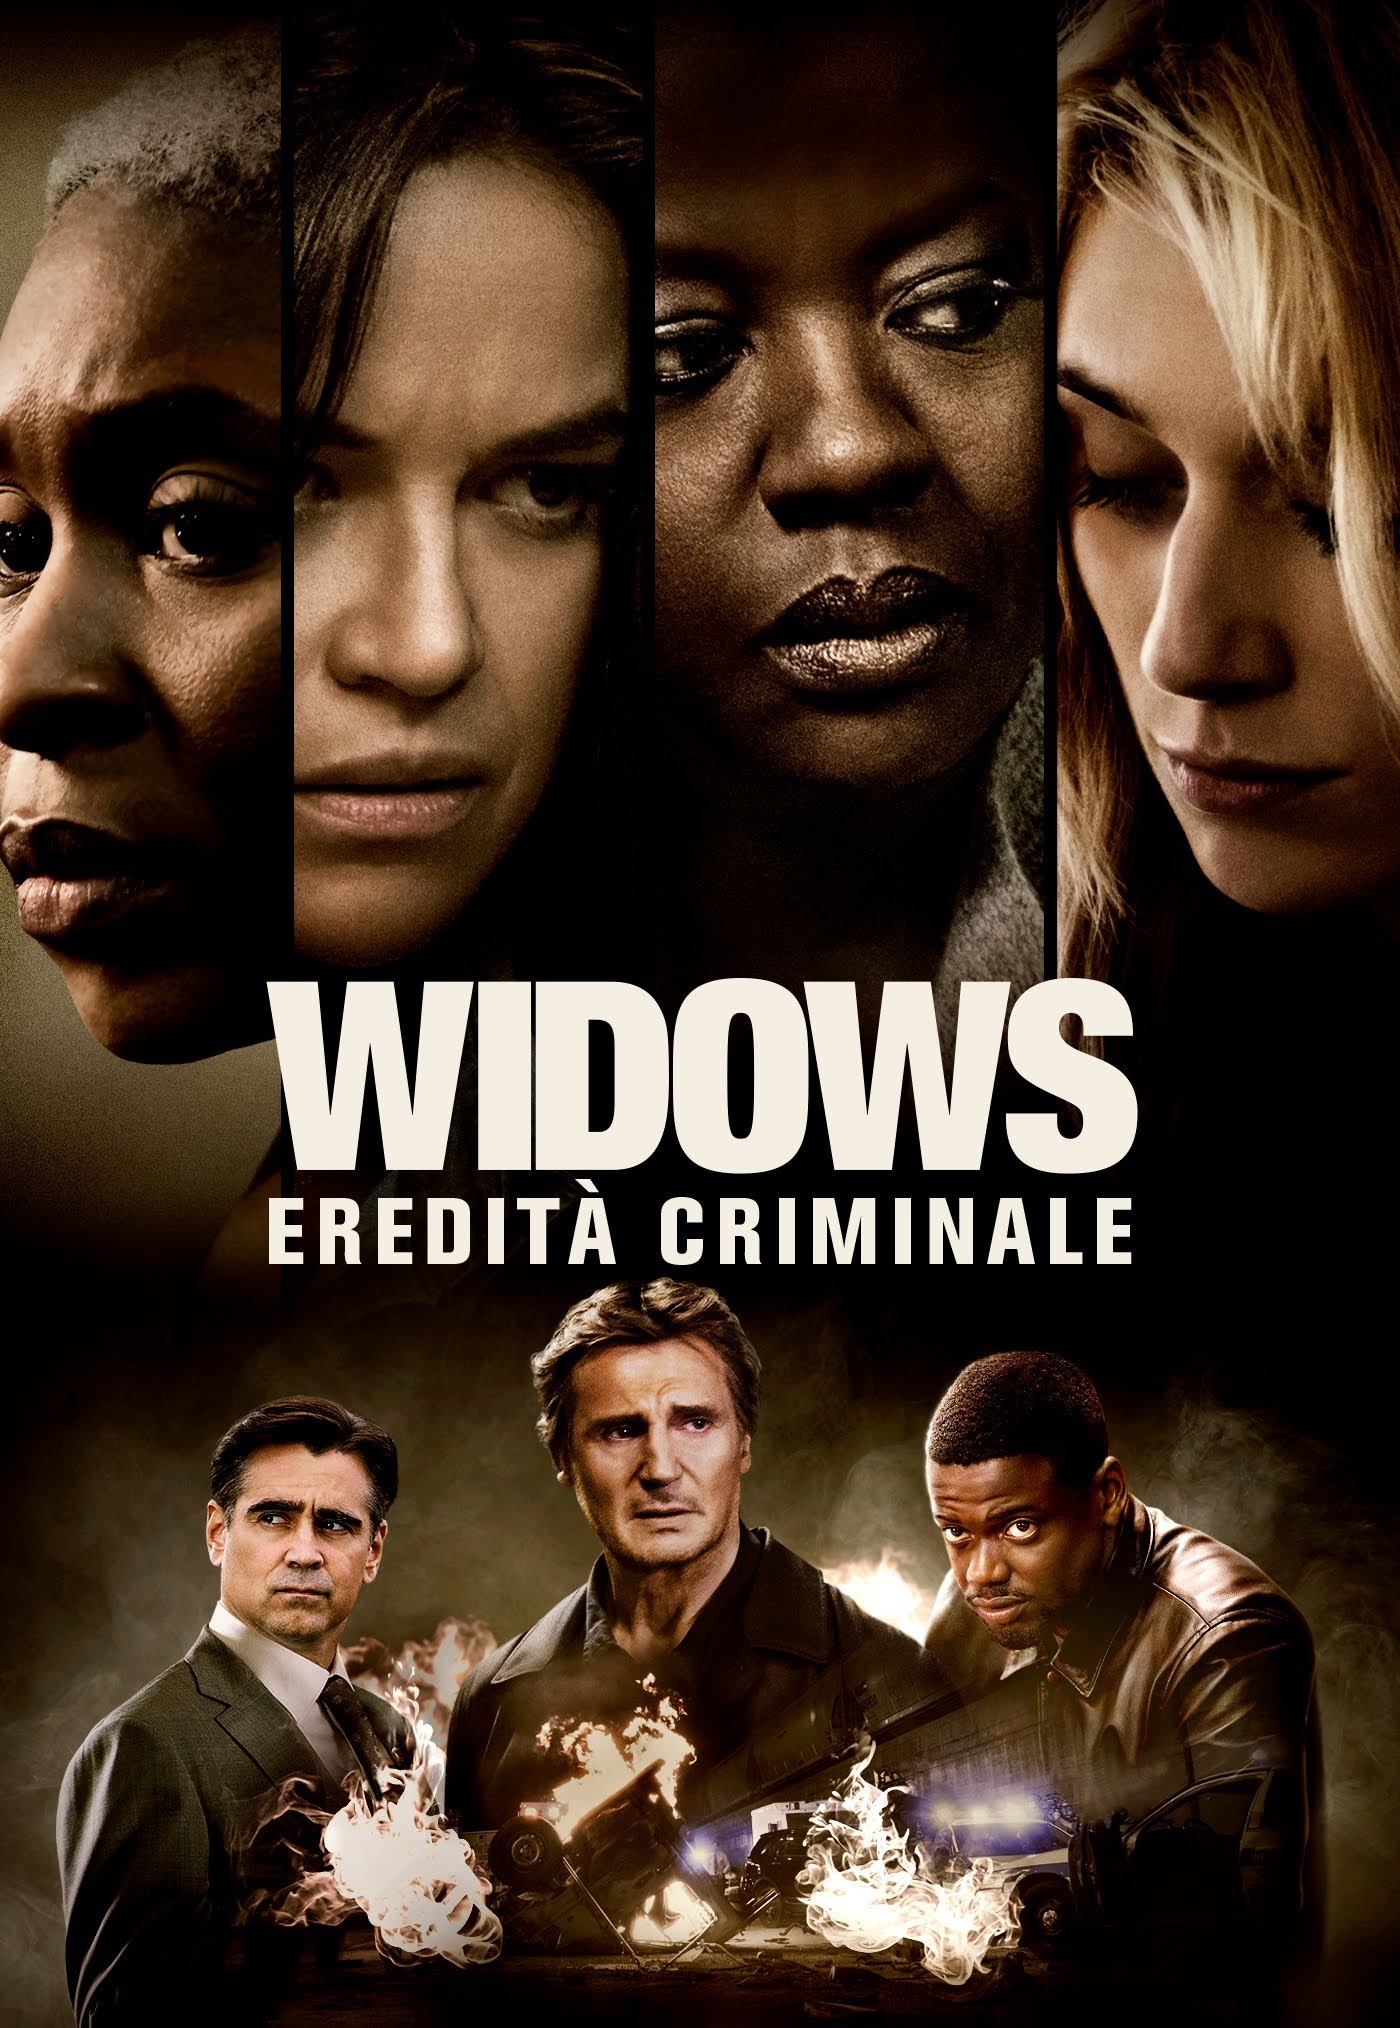 Widows – Eredità Criminale [HD] (2018)